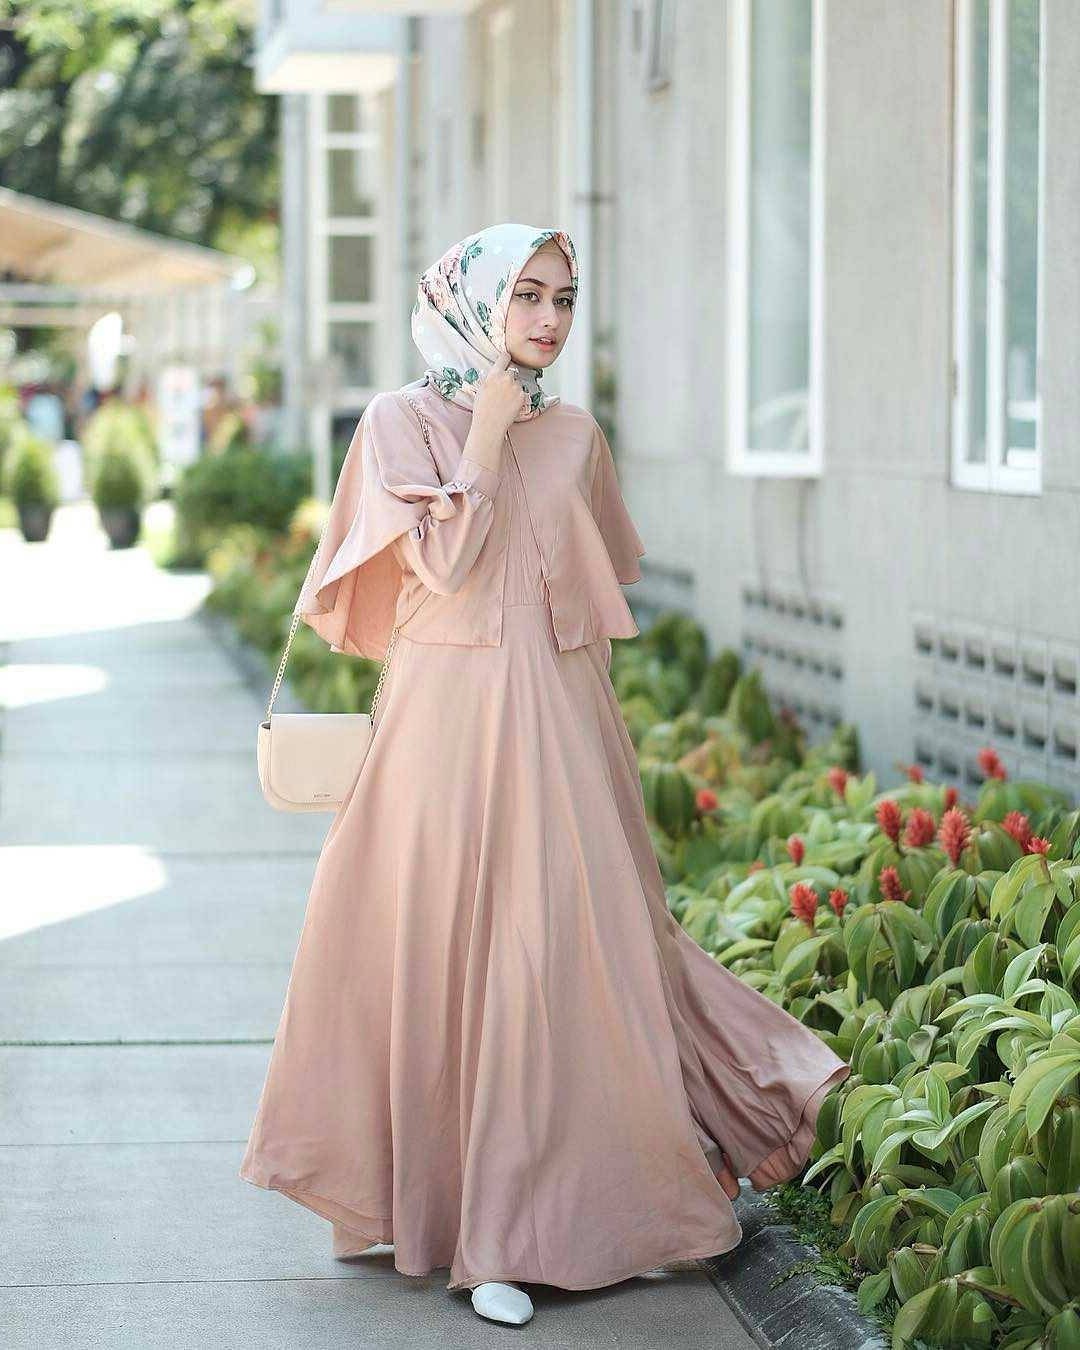 Ide Baju Lebaran Muslimah Wddj 21 Model Gamis Lebaran 2018 Desain Elegan Casual Dan Modern